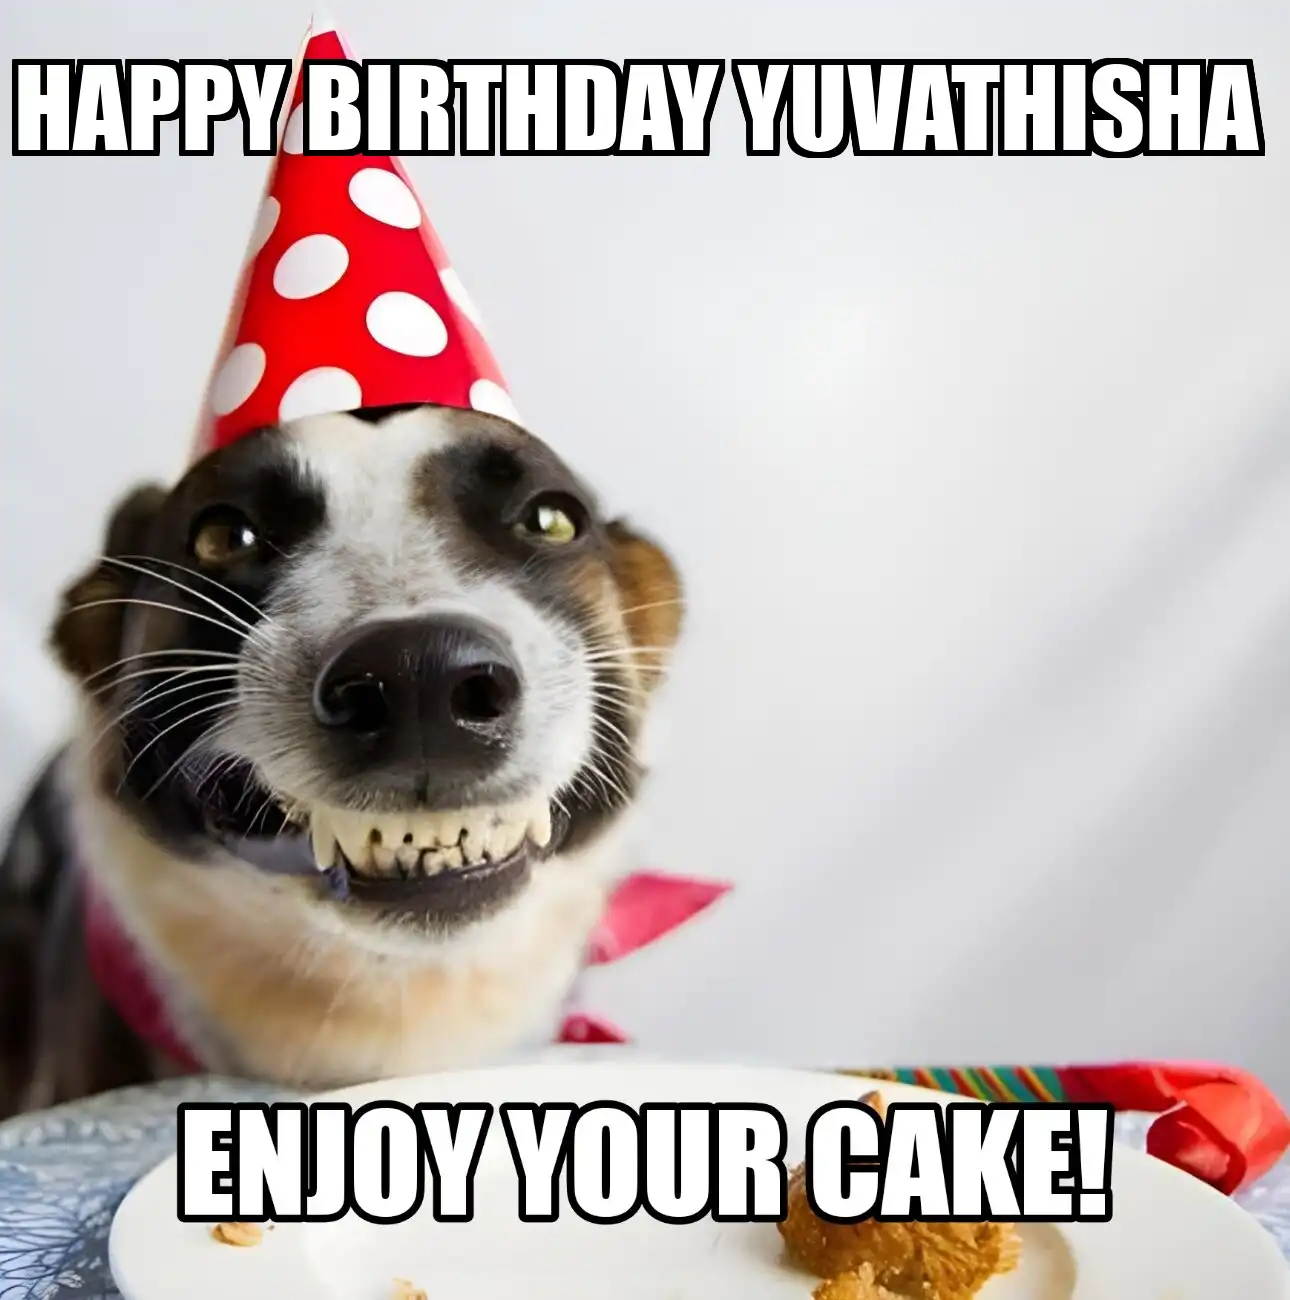 Happy Birthday Yuvathisha Enjoy Your Cake Dog Meme